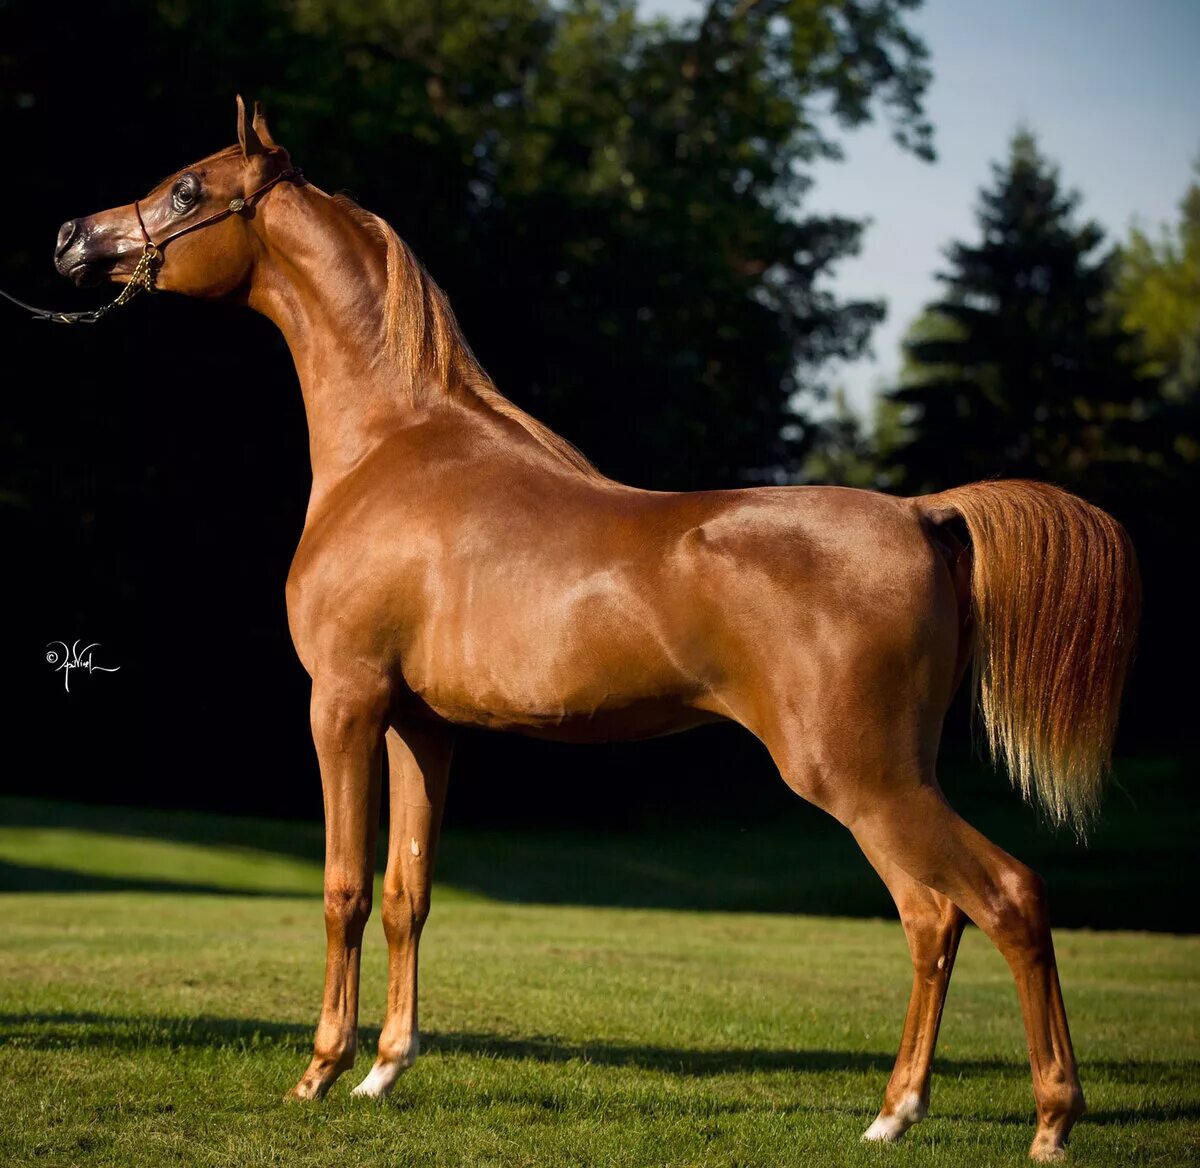 Арабская лошадь (арабский скакун). Кохейлан арабская лошадь. Лошади породы арабская чистокровная. Арабская лошадь кохейлан-сиглави. Порода самой дорогой лошади